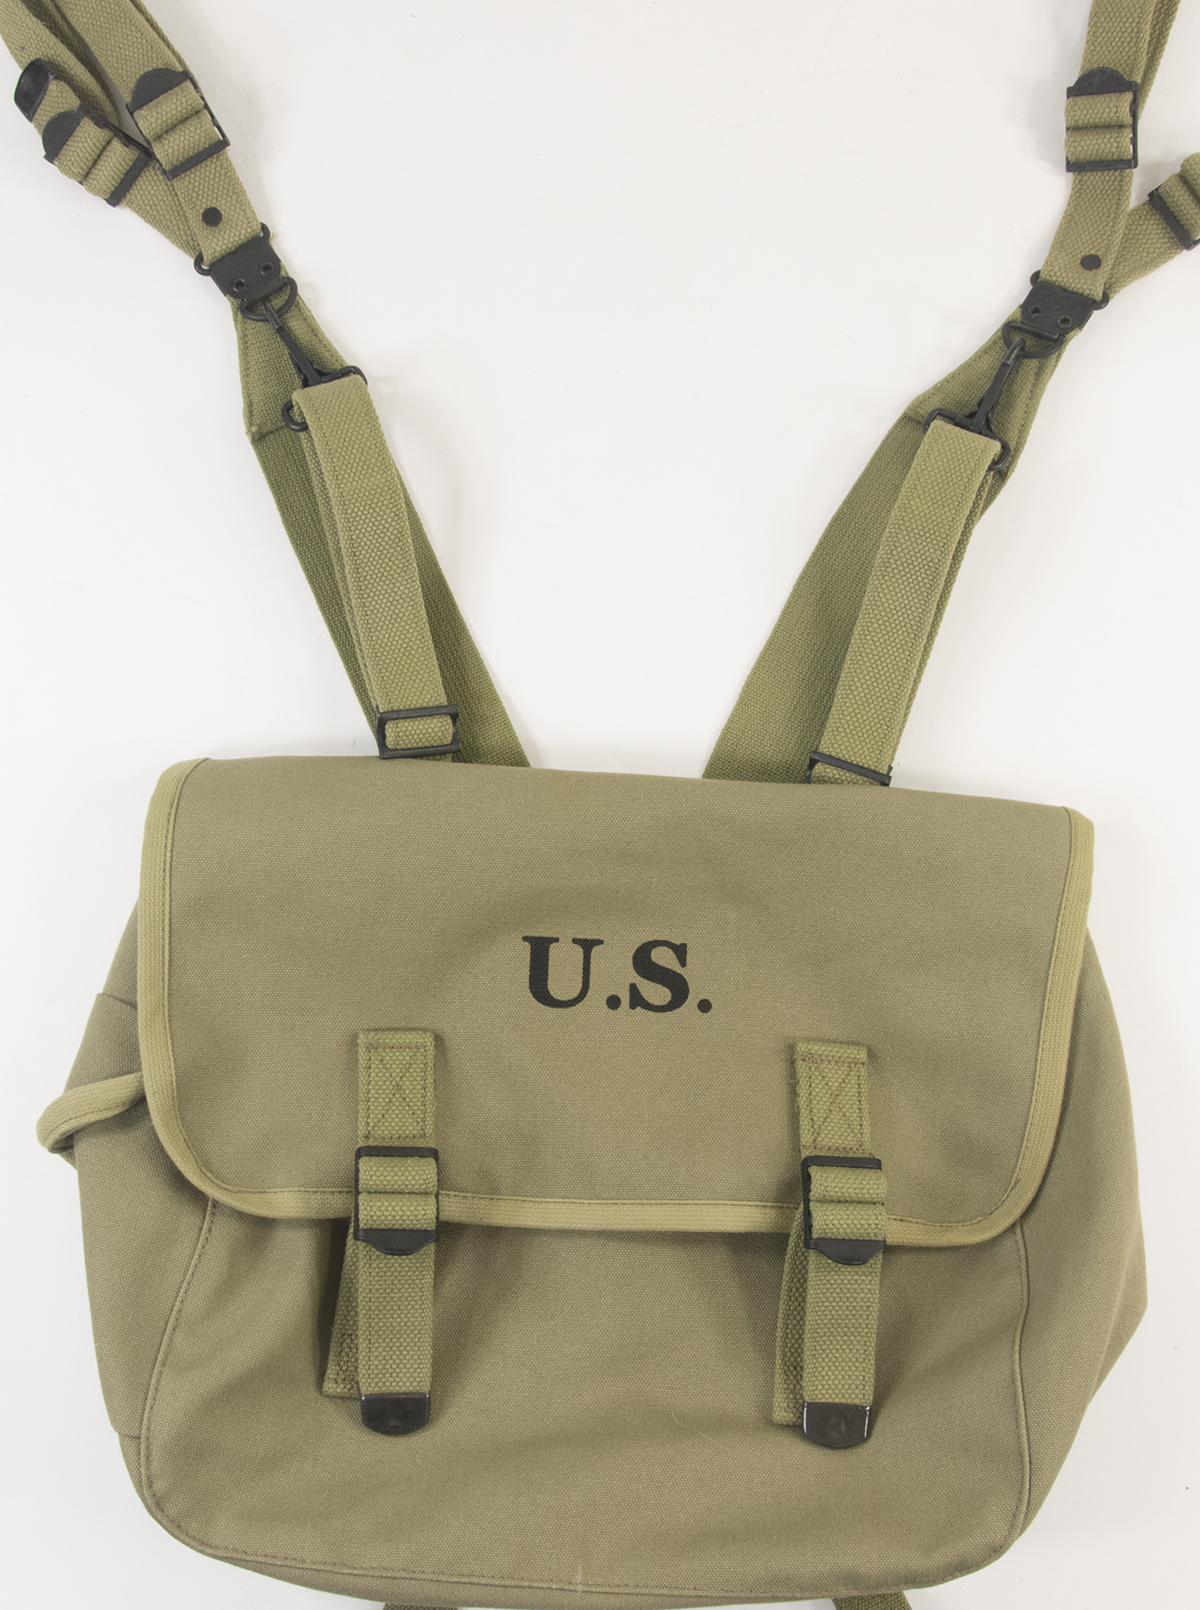 U.S. WW2 M1936 Musette Bag with Shoulder strap Lt OD marked JT&L® 1943